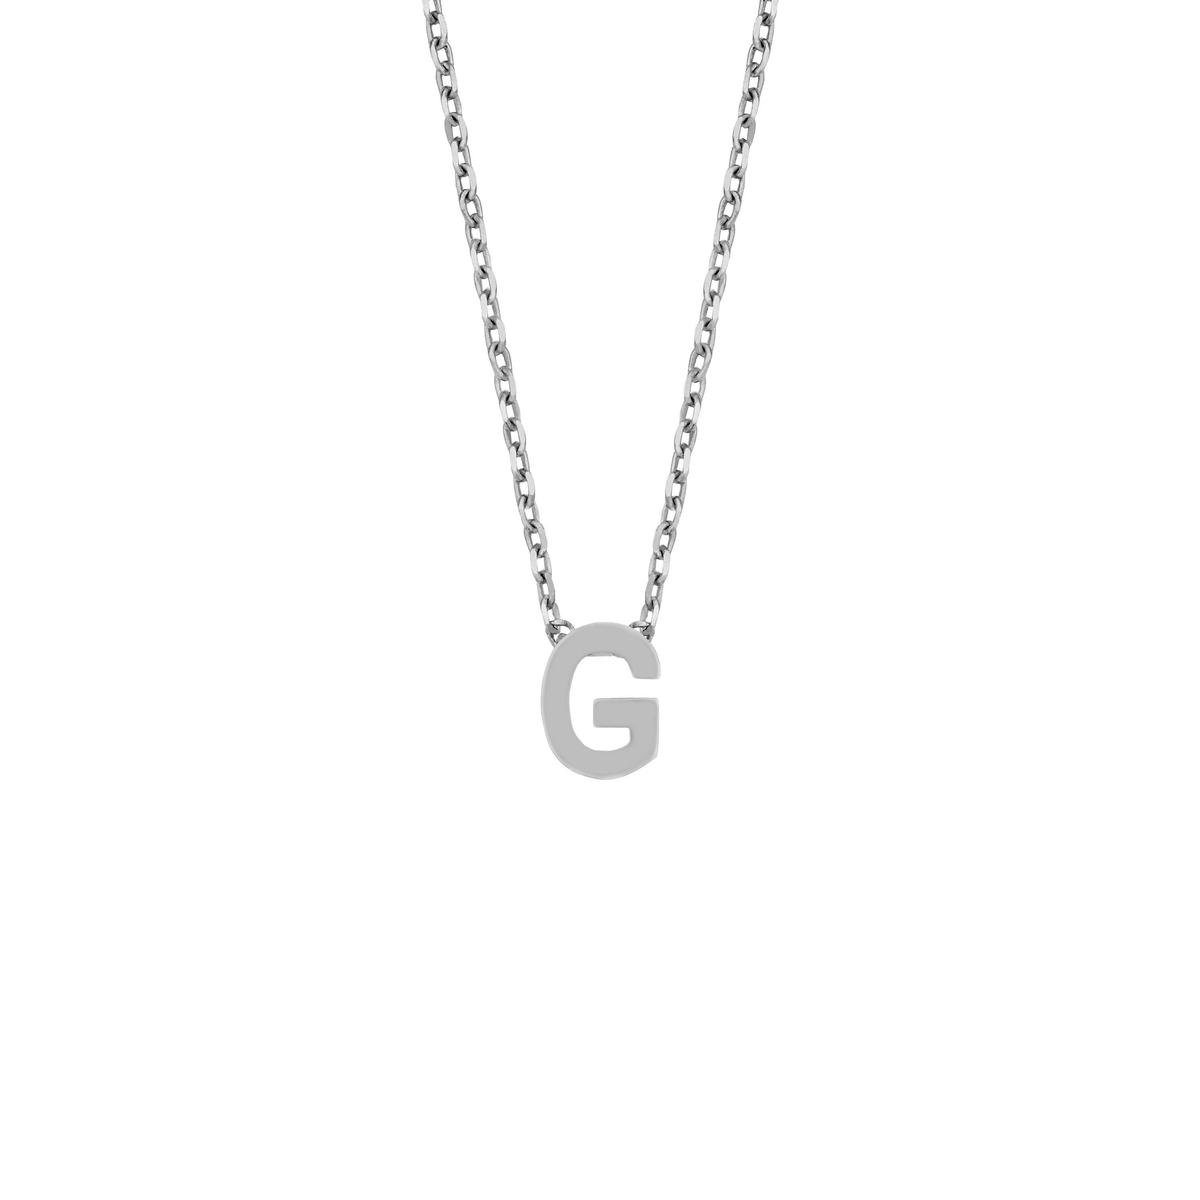 Cadeau voor haar New Bling 9NB 907G Zilveren Ketting Dames - letterhanger - G - Zilverkleurig